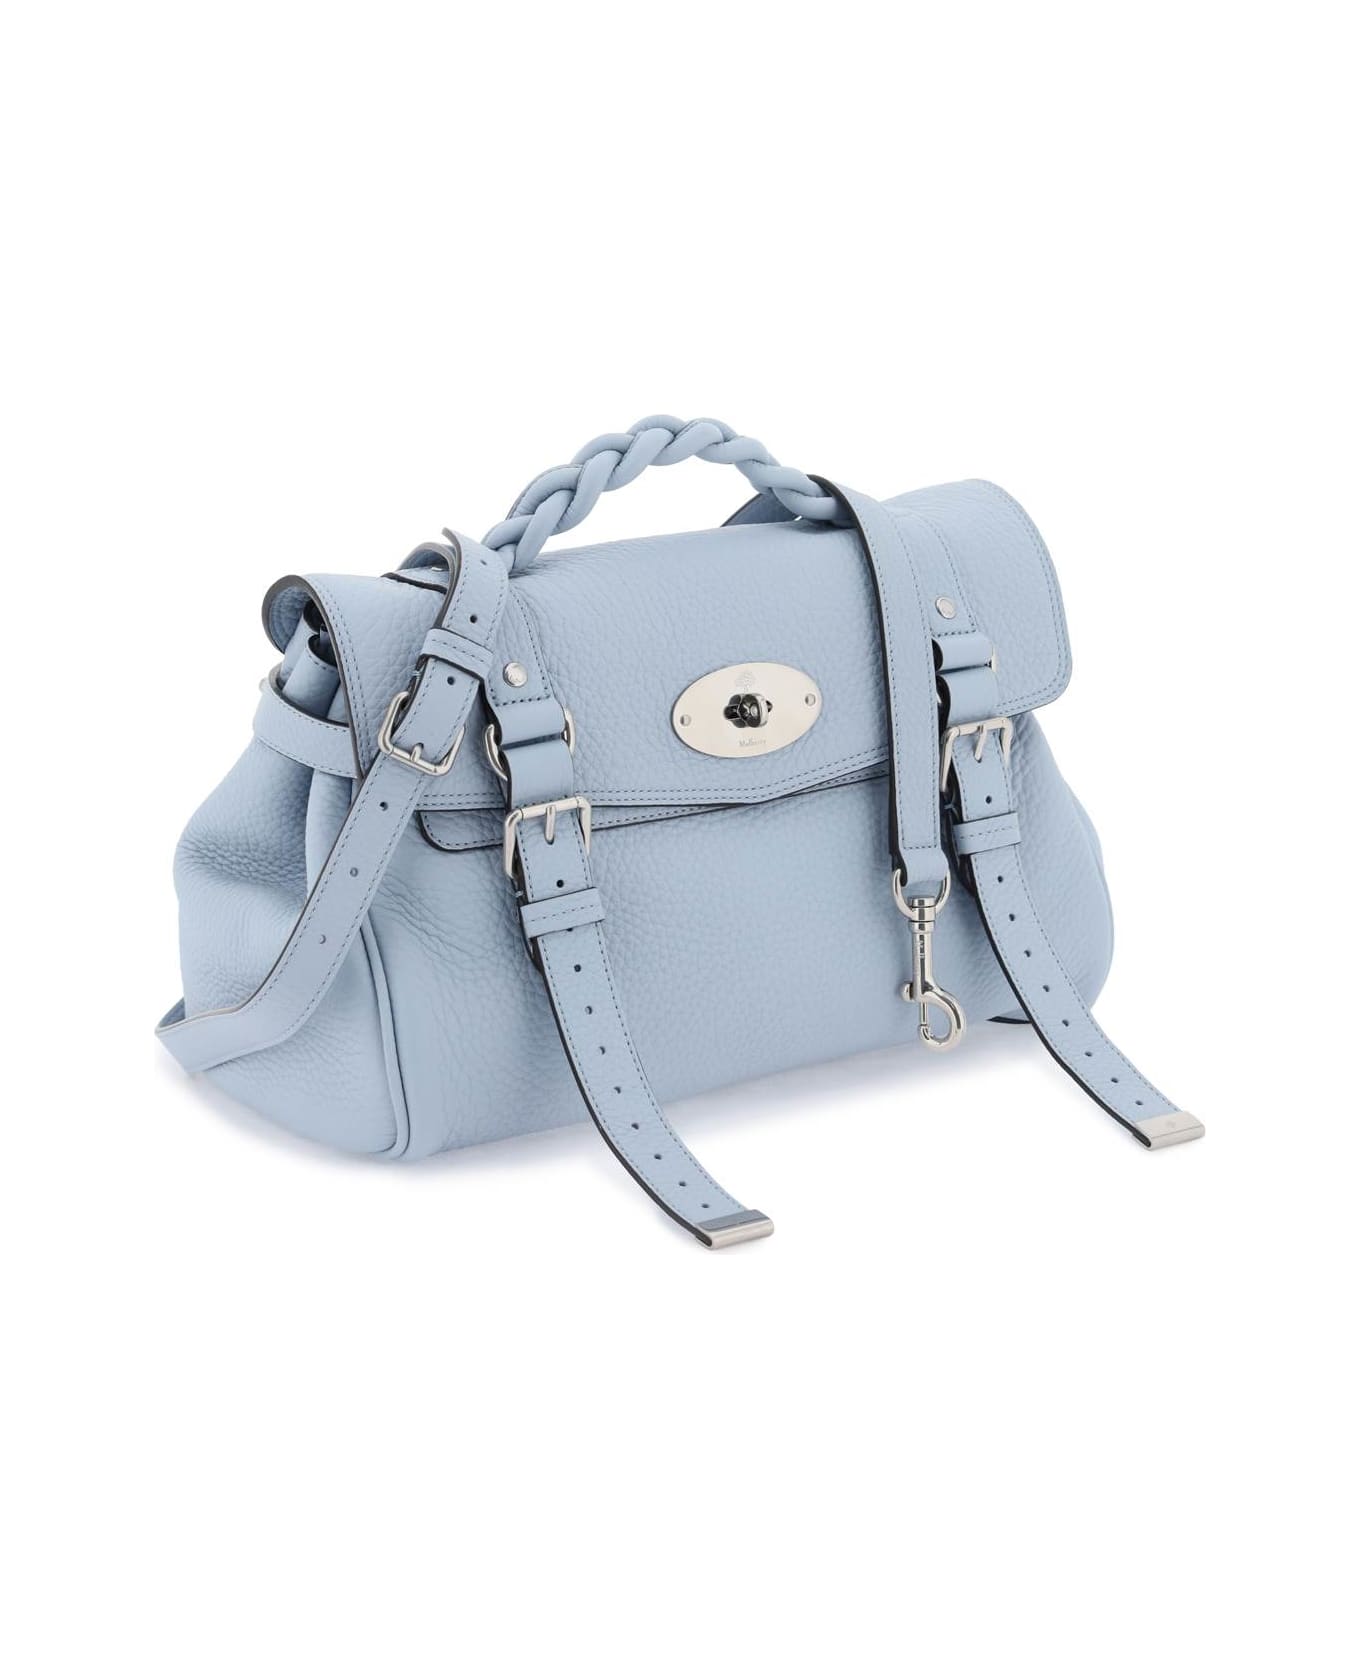 Mulberry Alexa Medium Handbag - POPLIN BLUE (Light blue) ショルダーバッグ